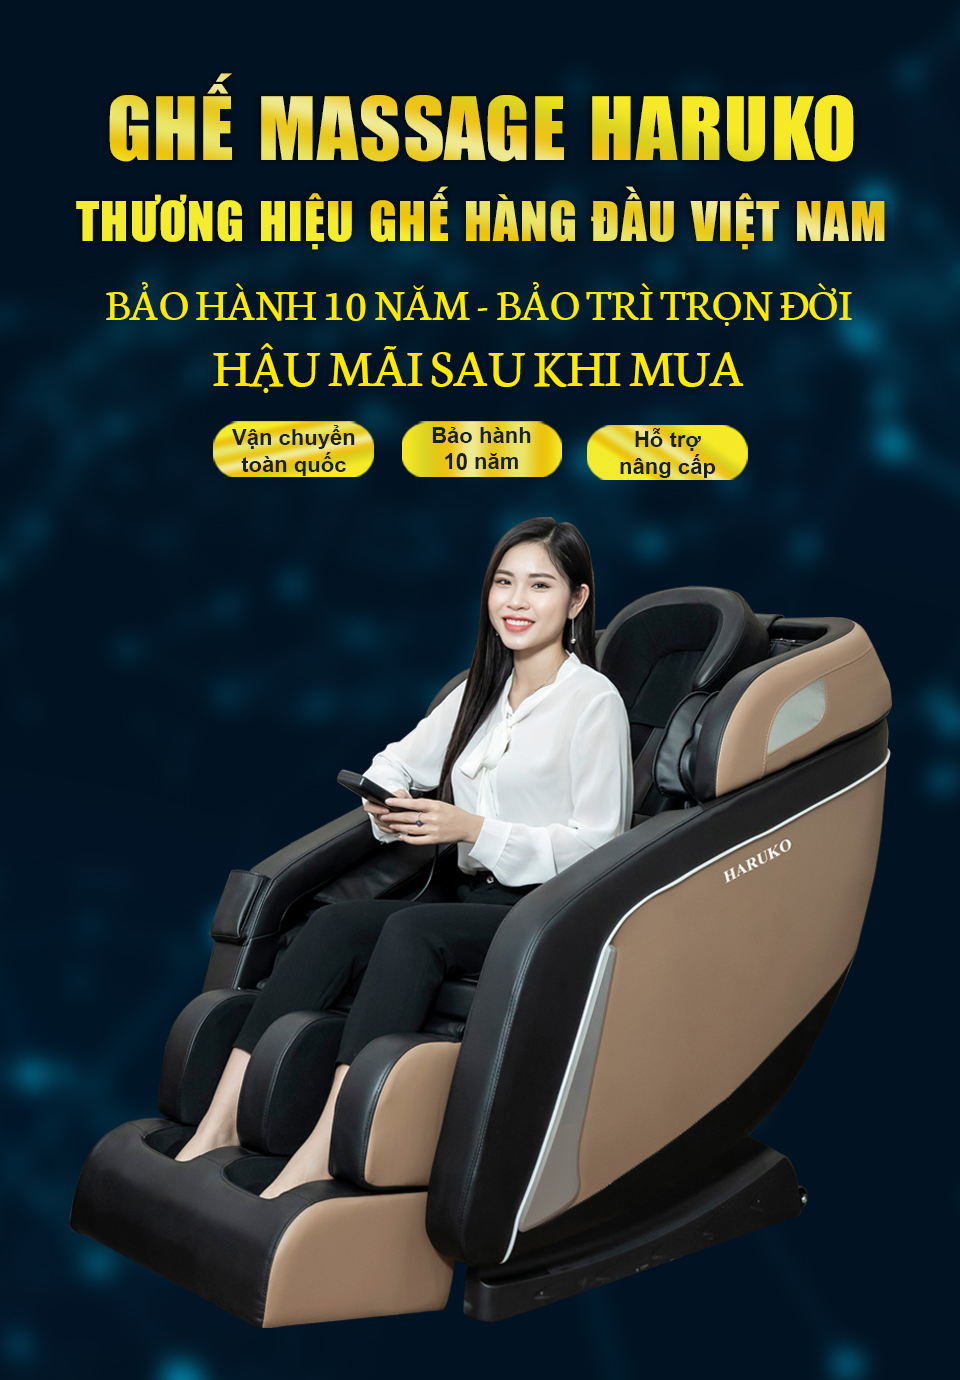 Haruko-H6 là sản phẩm ghế massage phổ biến trong phân khúc giá rẻ và sử dụng vô cùng dễ dàng